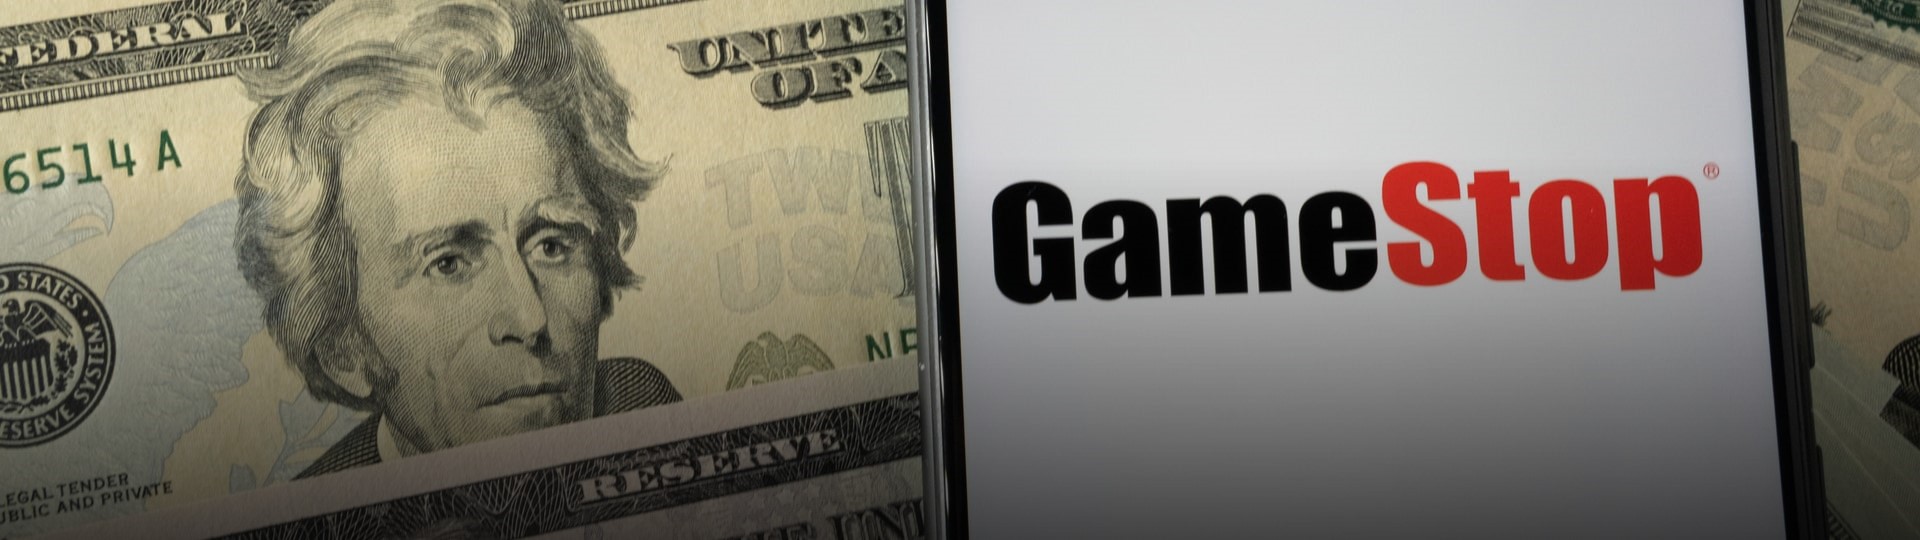 Yellenová svolala kvůli kauze GameStop schůzku s regulátory